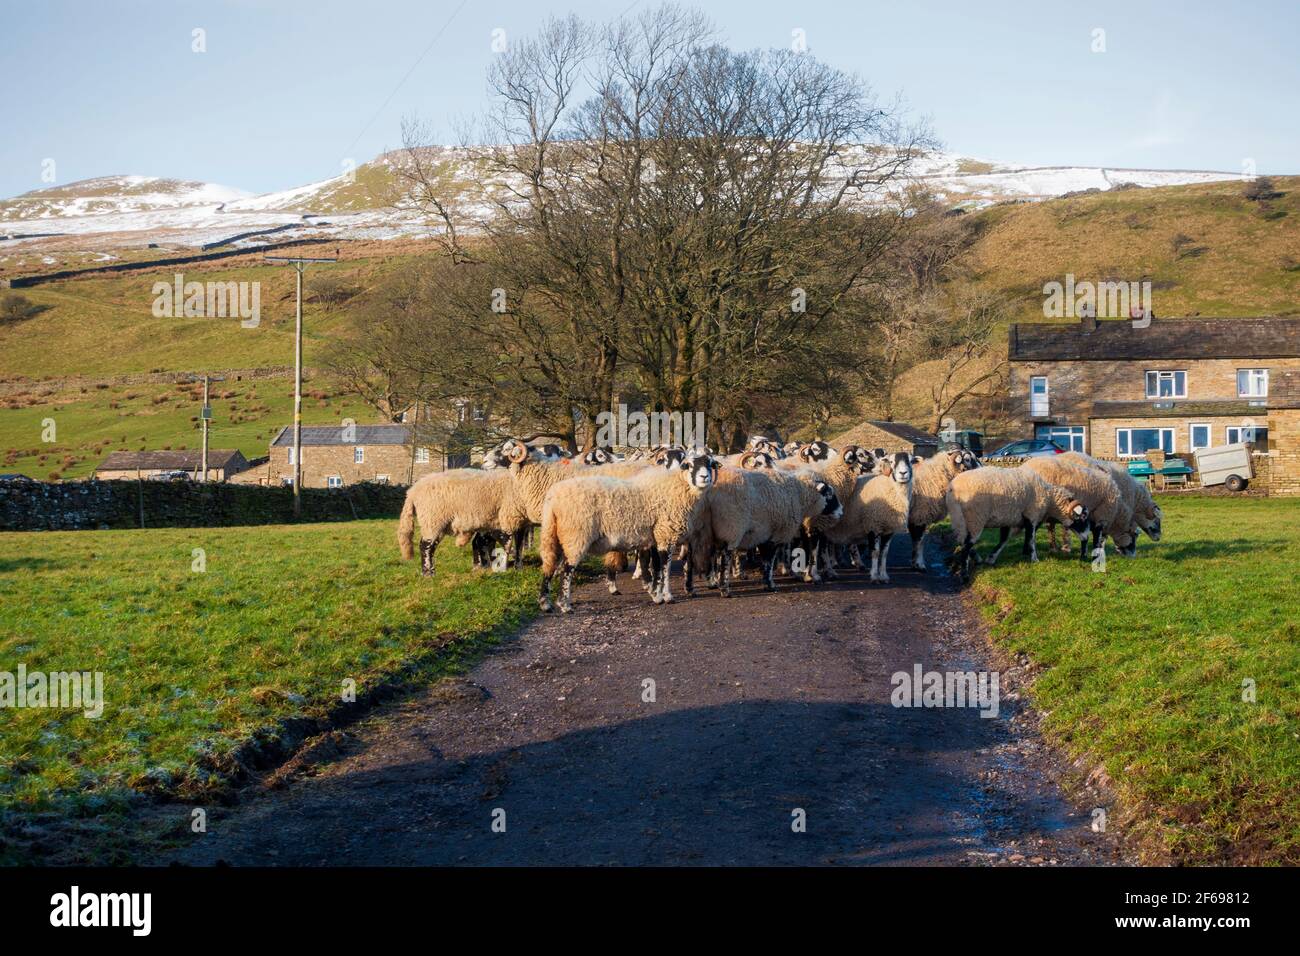 Moutons dans une ferme près de Sedbusk, parc national de Yorkshire Dales Banque D'Images